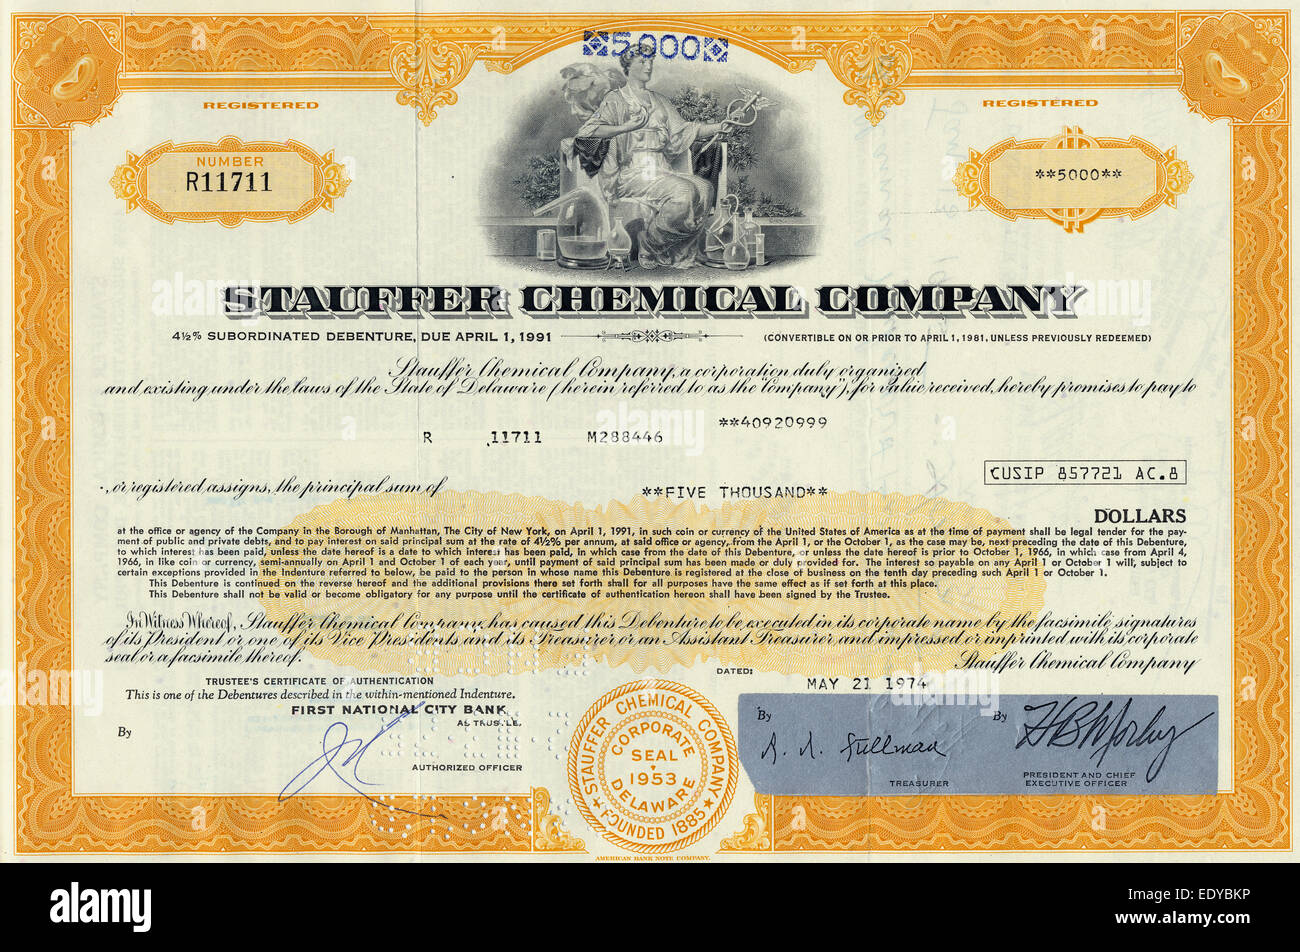 La quota storica certificato, Stauffer Chemical Company, 1974, DELAWARE, STATI UNITI D'AMERICA Foto Stock